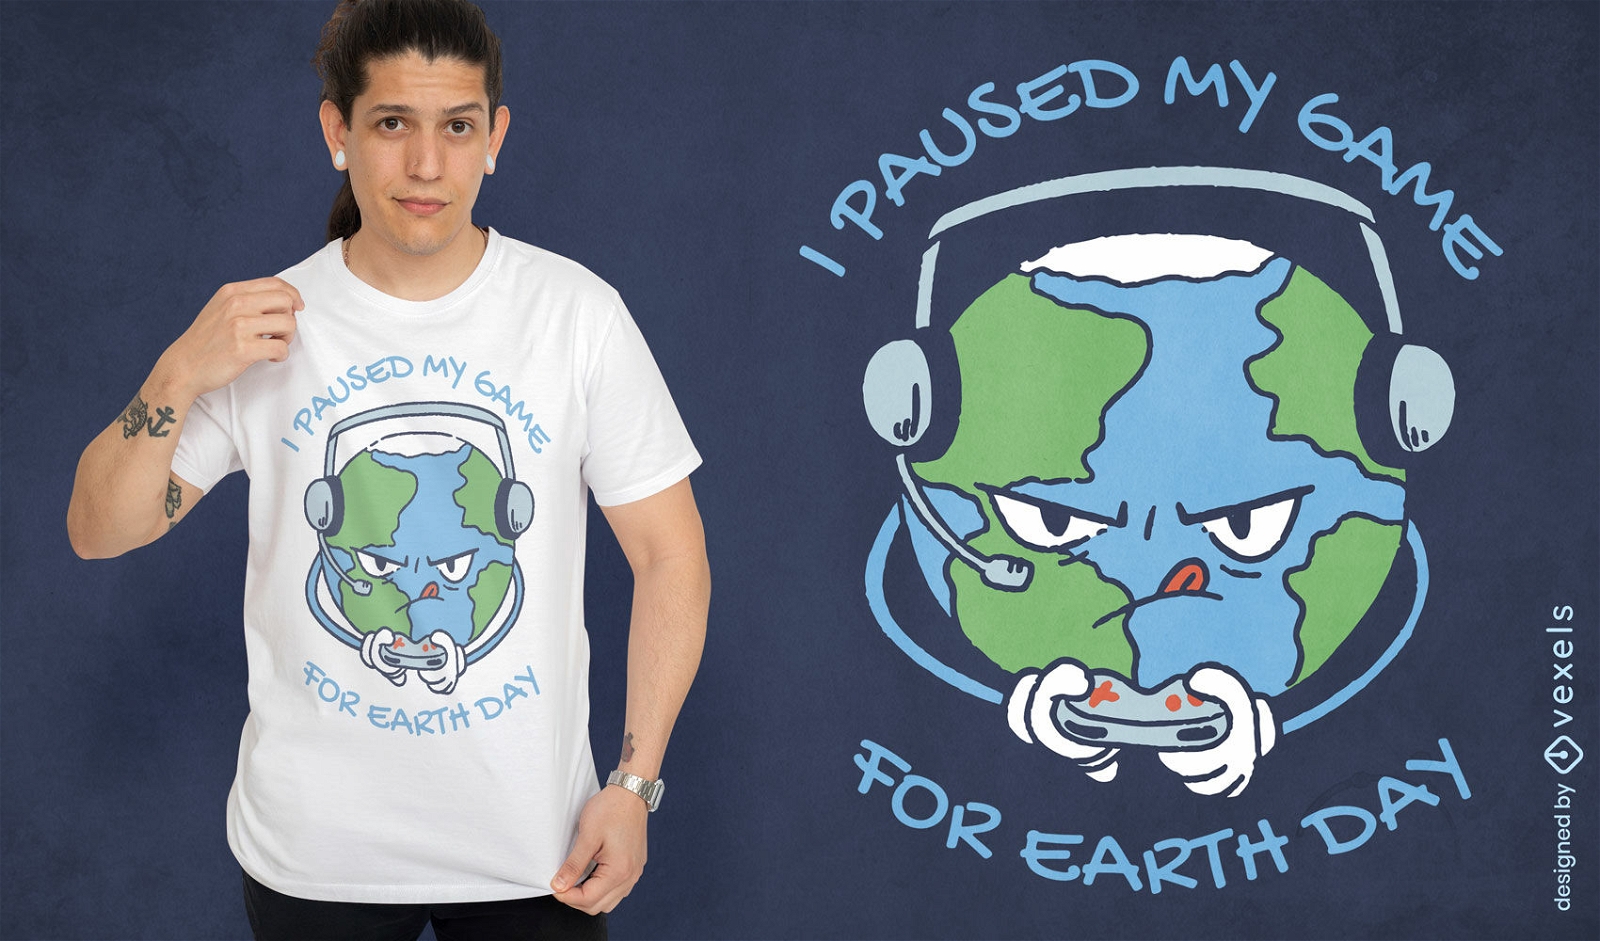 Dise?o de camiseta de videojuegos de Earth.